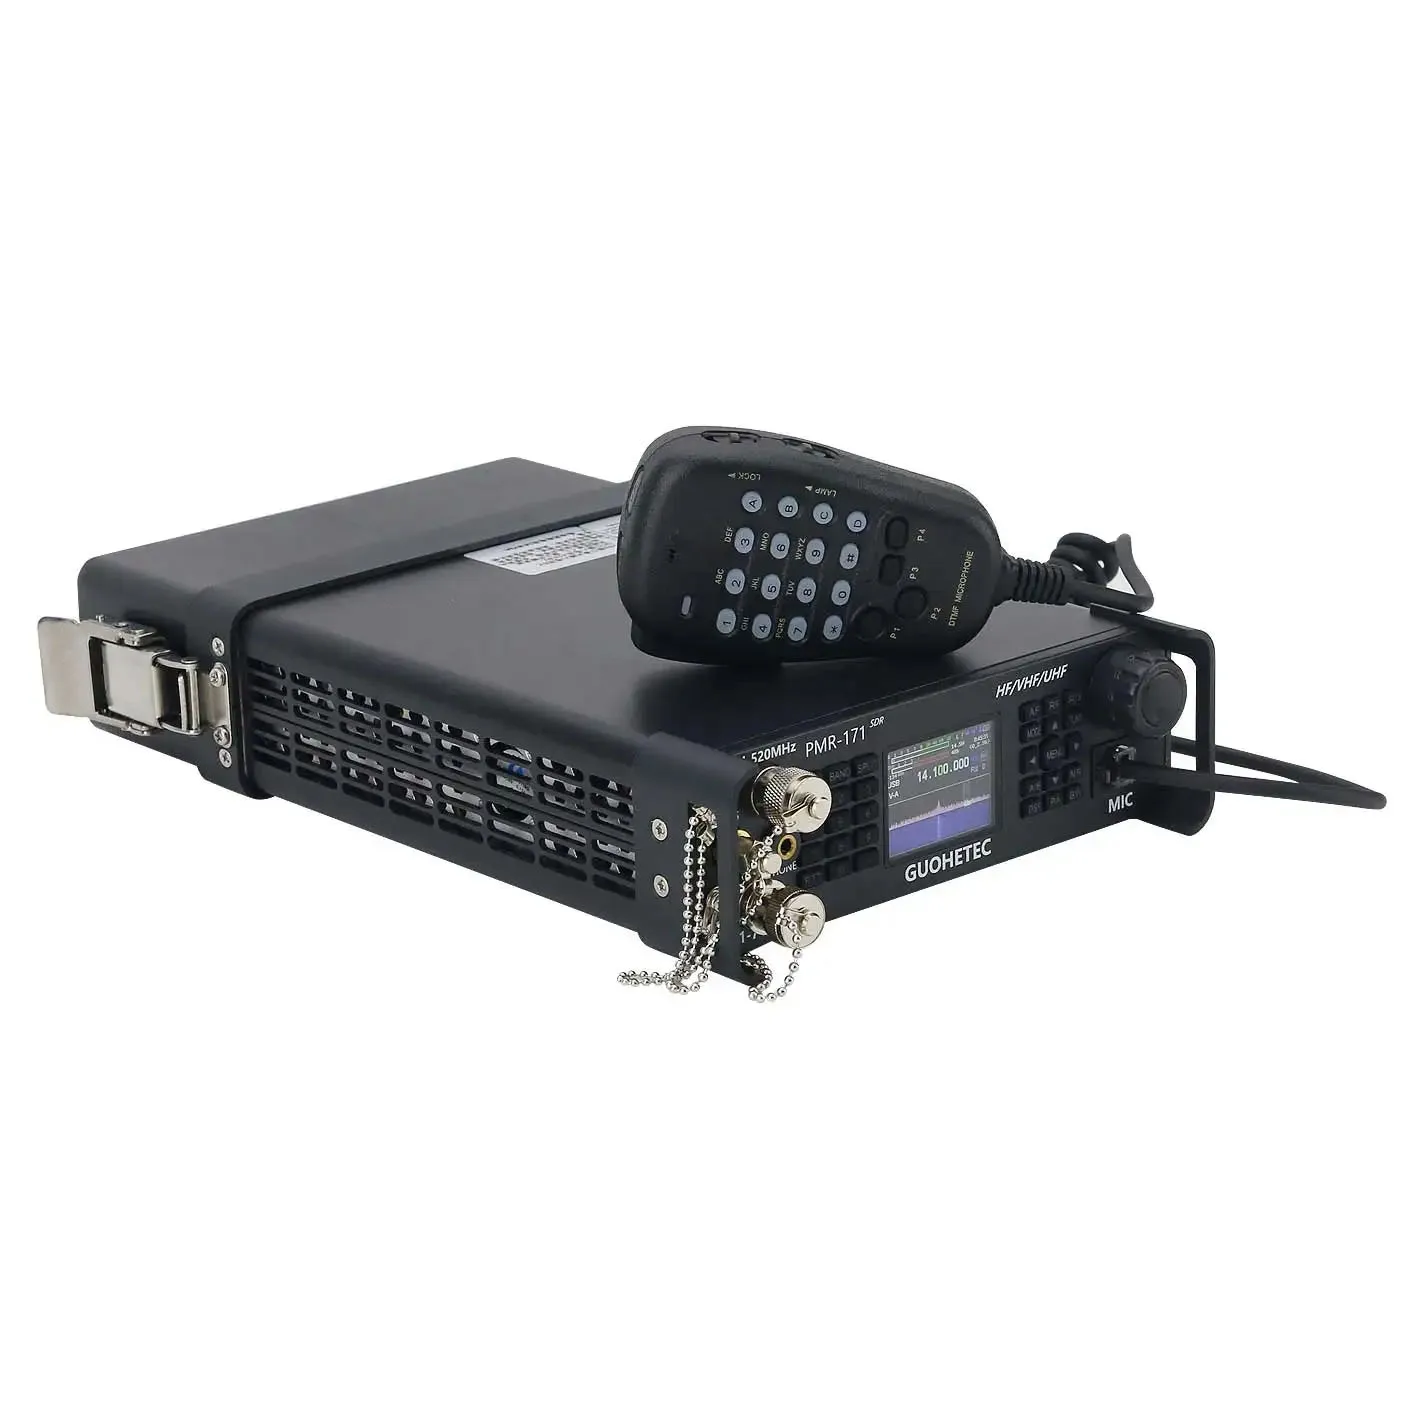 HAMGEEK PMR-171 20W 100K-2GHz katonai rövidhullámú rádió SDR adó-vevő kettős VFO mód CW AM SW FT8 USB LSB FM DMR mobil rádió - 0